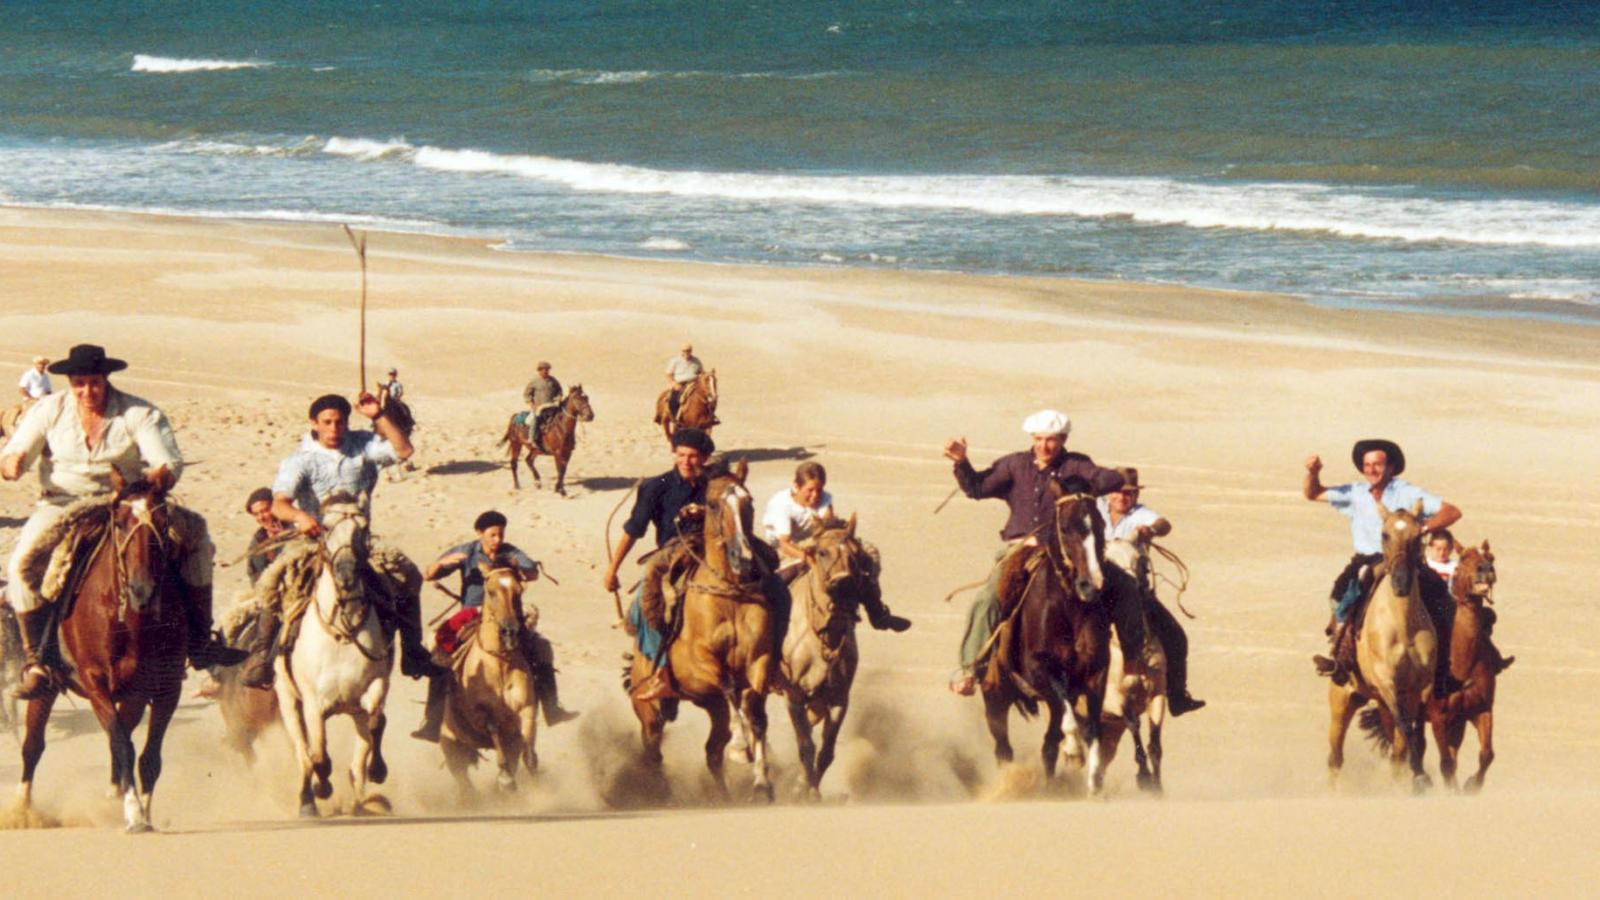 Riding with Gauchos in Uruguay